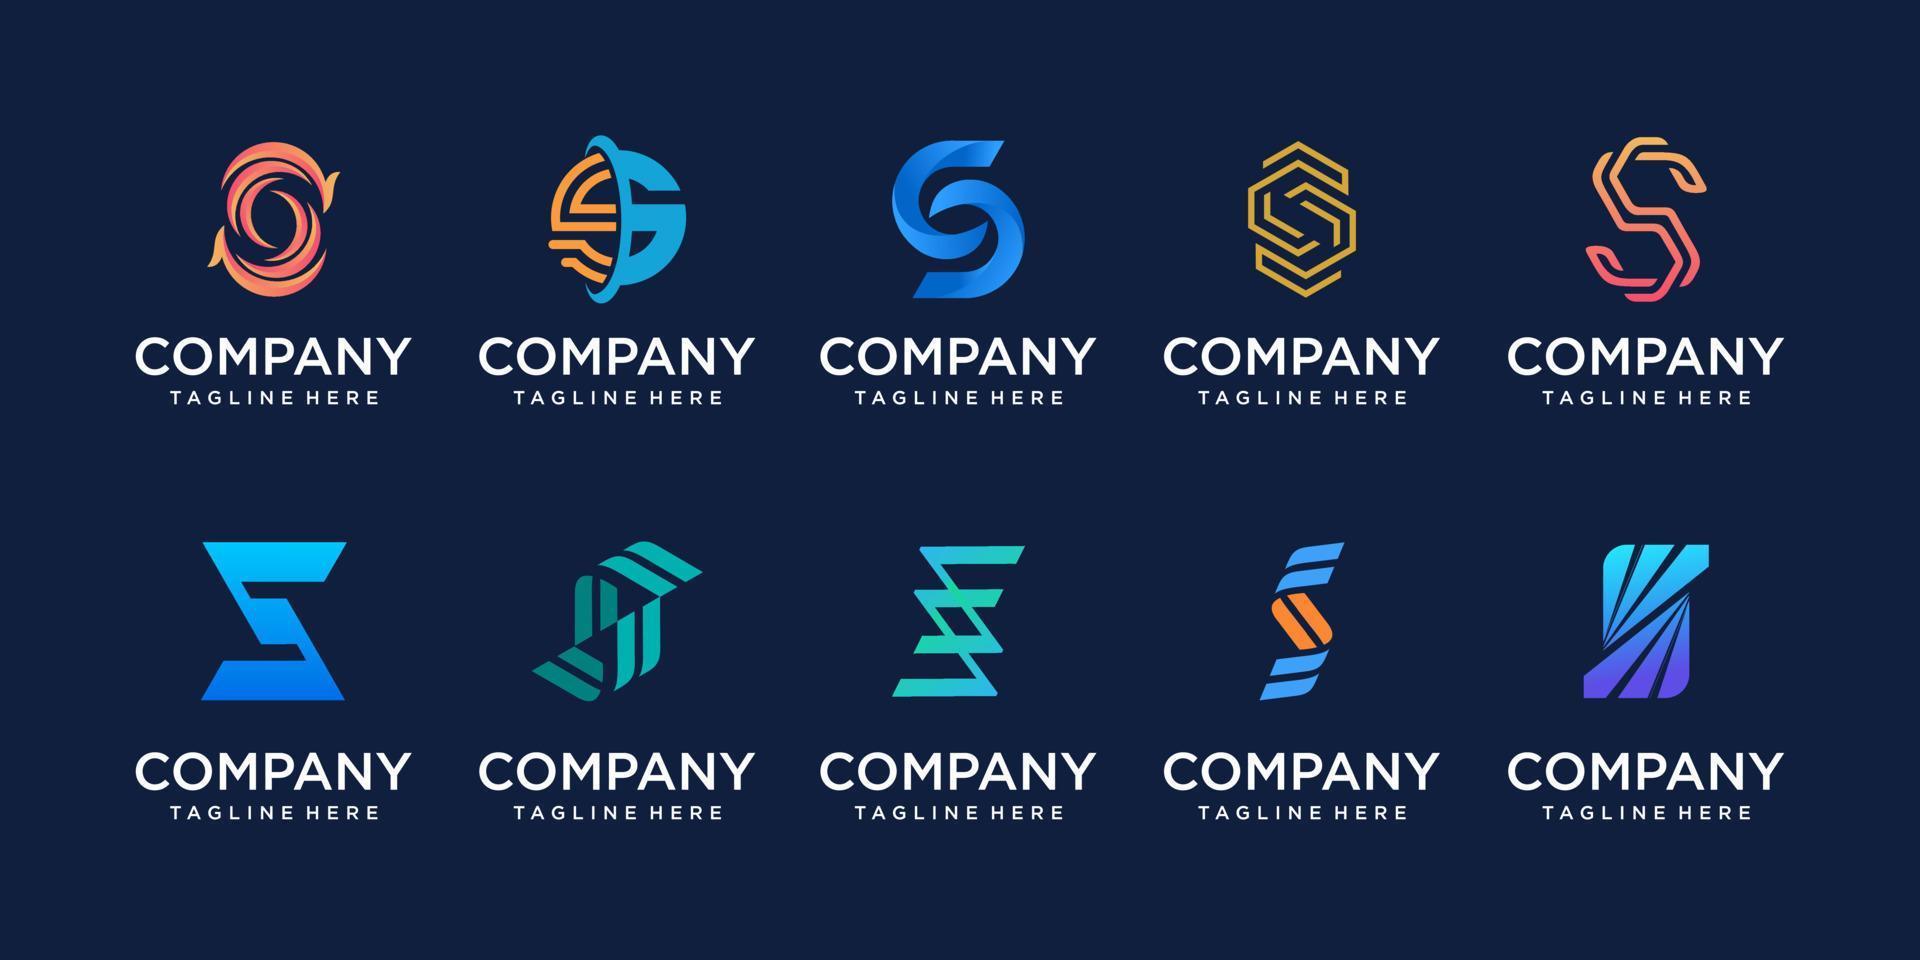 conjunto de plantilla de diseño de logotipo de letra inicial s ss de colección. iconos para negocios de moda, deporte, automoción, tecnología digital. vector